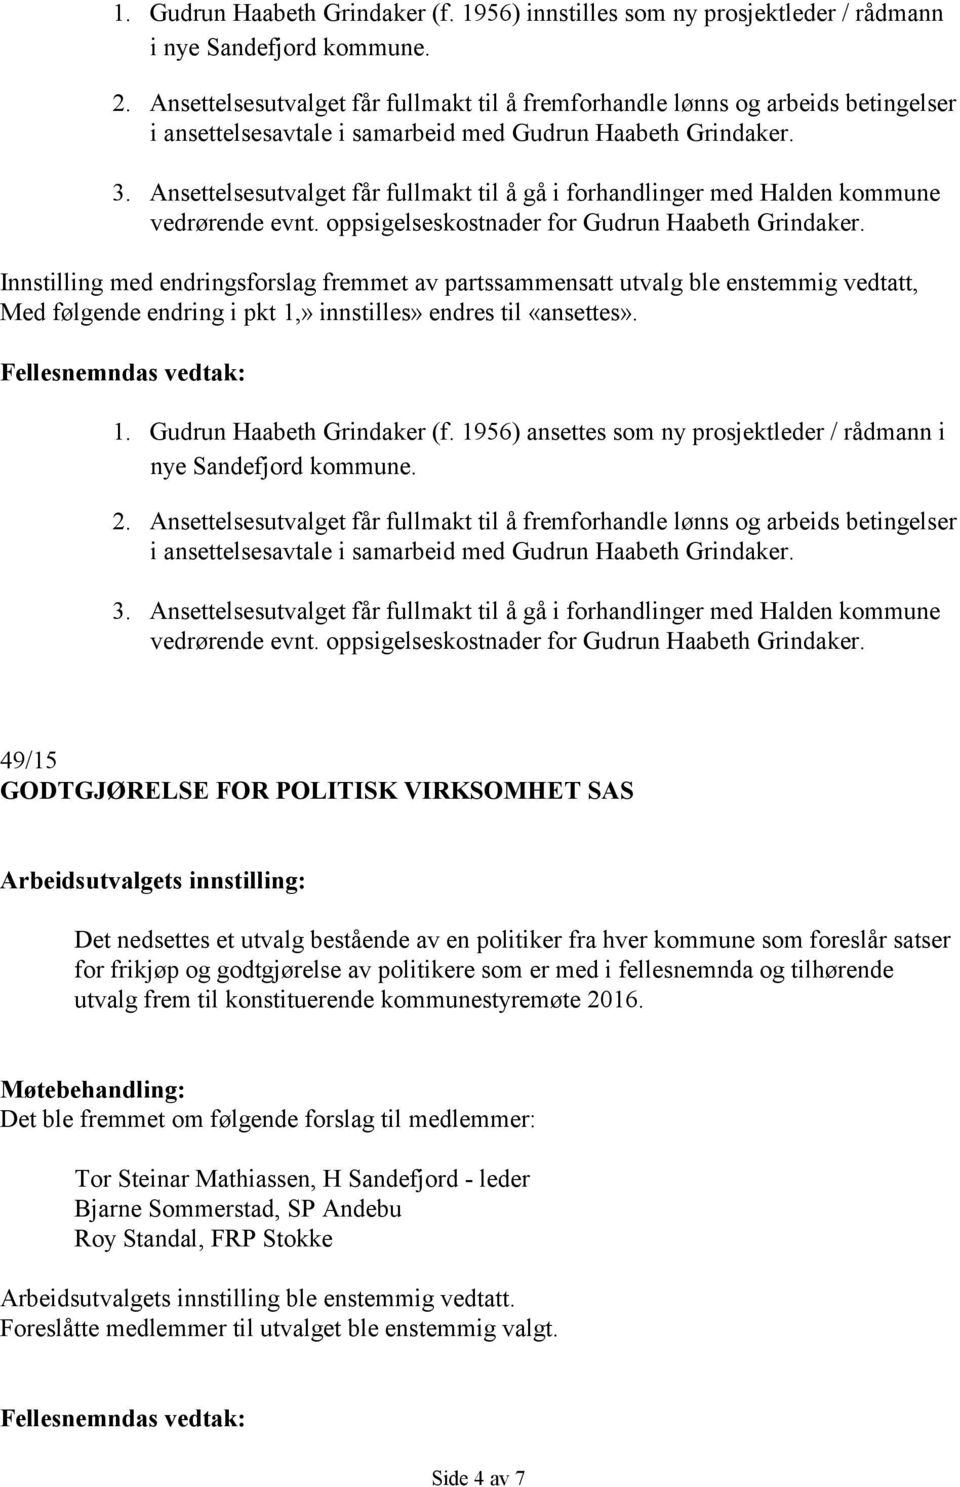 Ansettelsesutvalget får fullmakt til å gå i forhandlinger med Halden kommune vedrørende evnt. oppsigelseskostnader for Gudrun Haabeth Grindaker.